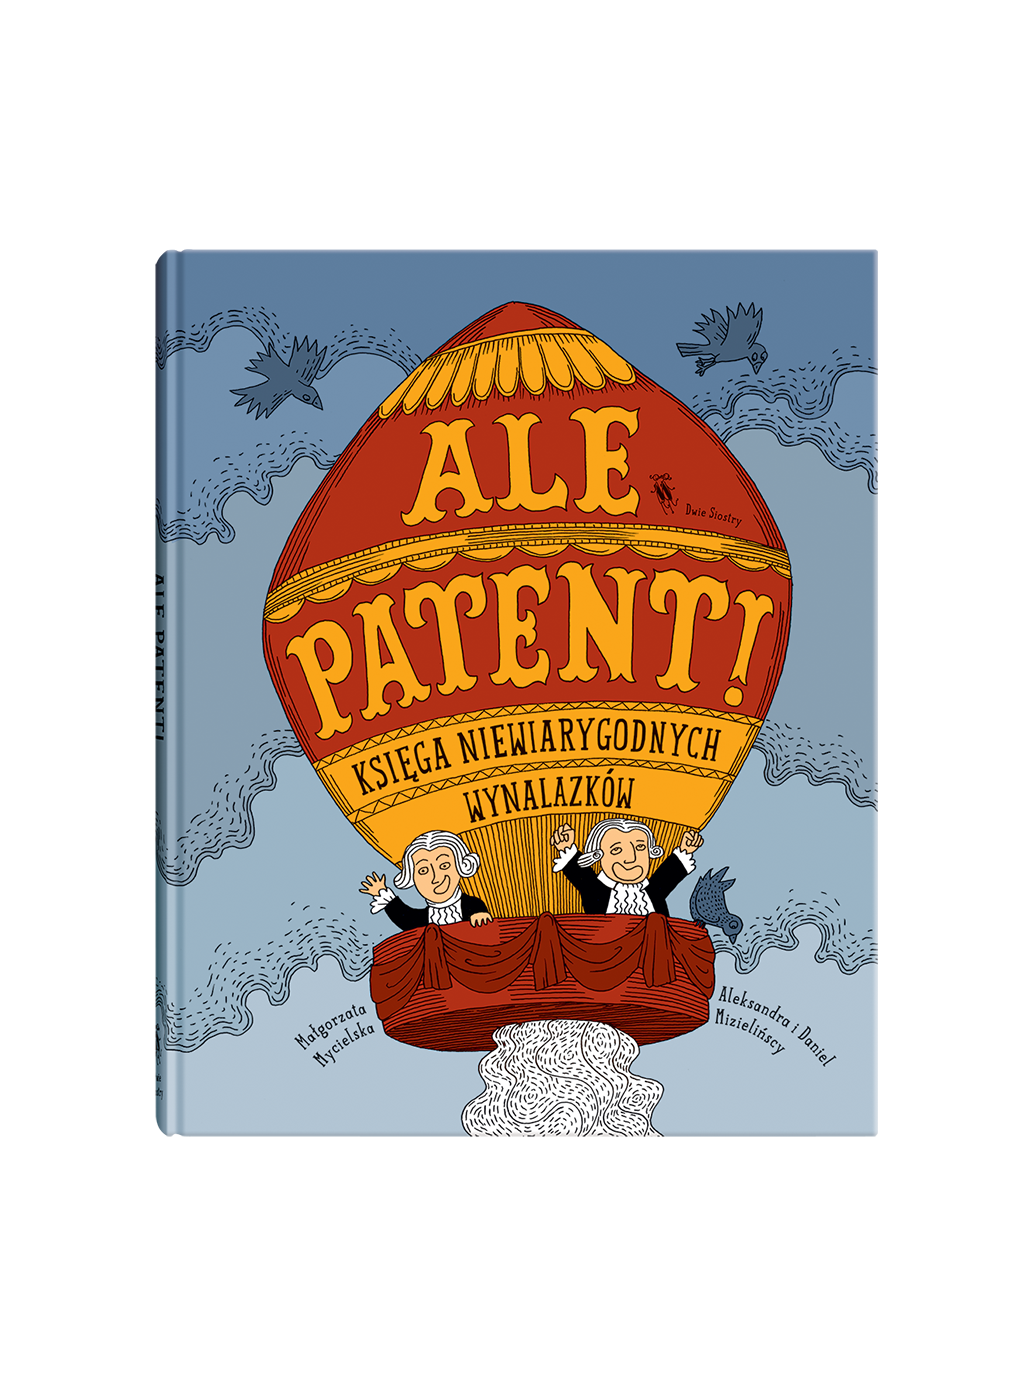 Ale Patent!